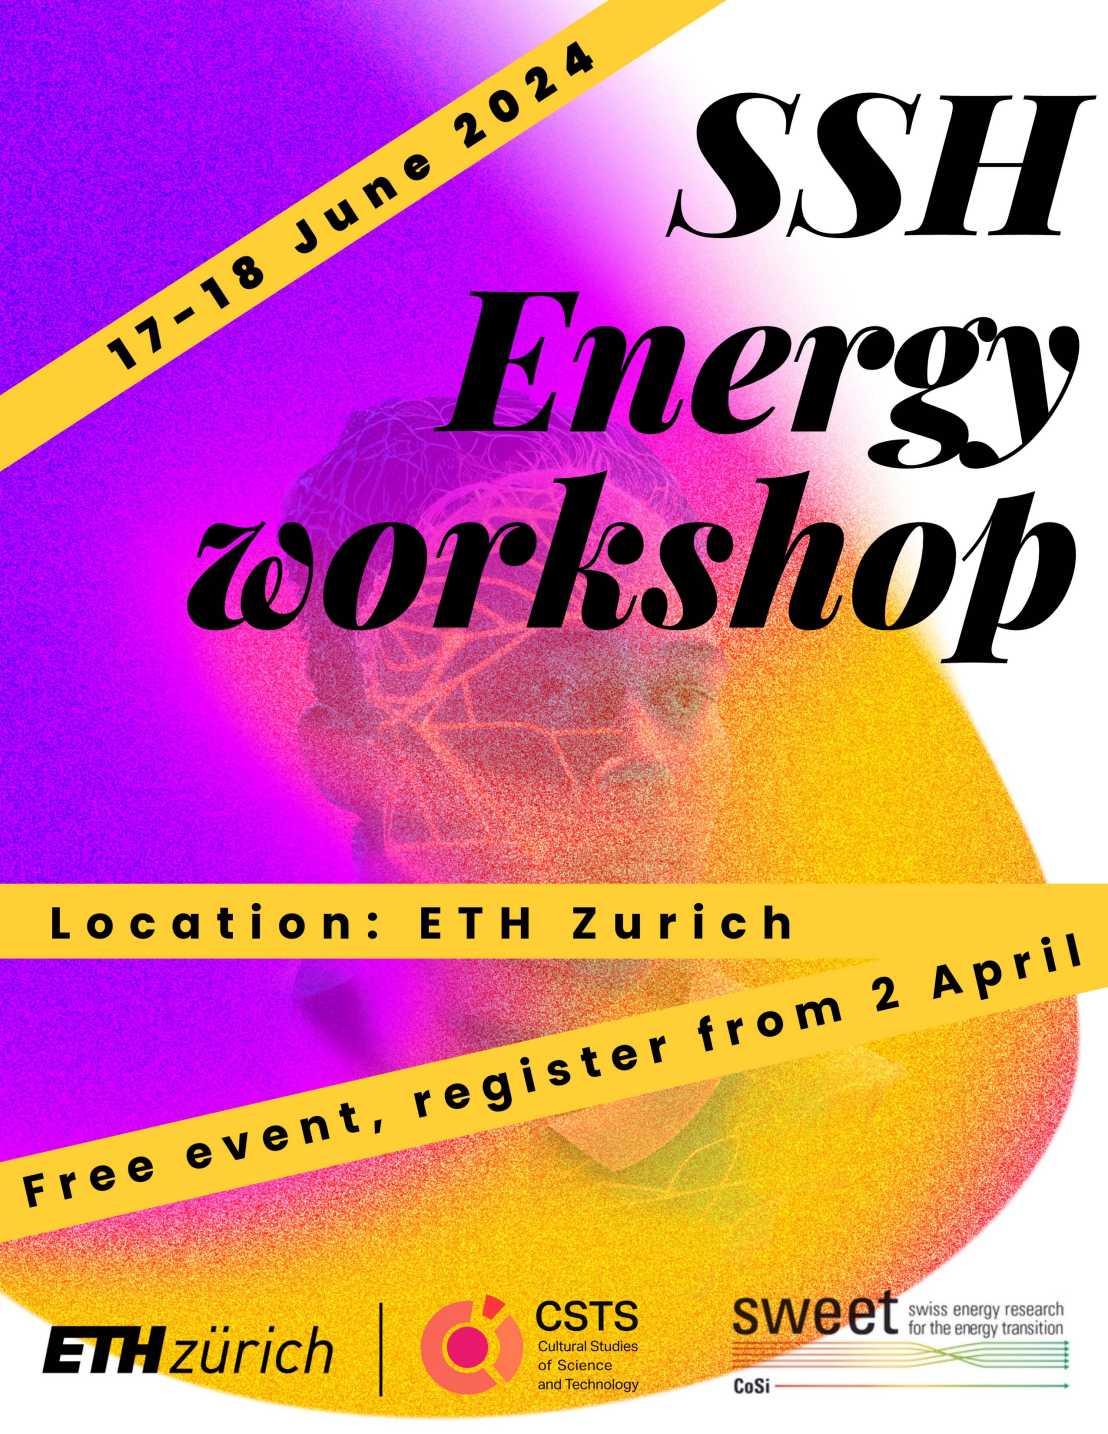 SSH Energy poster